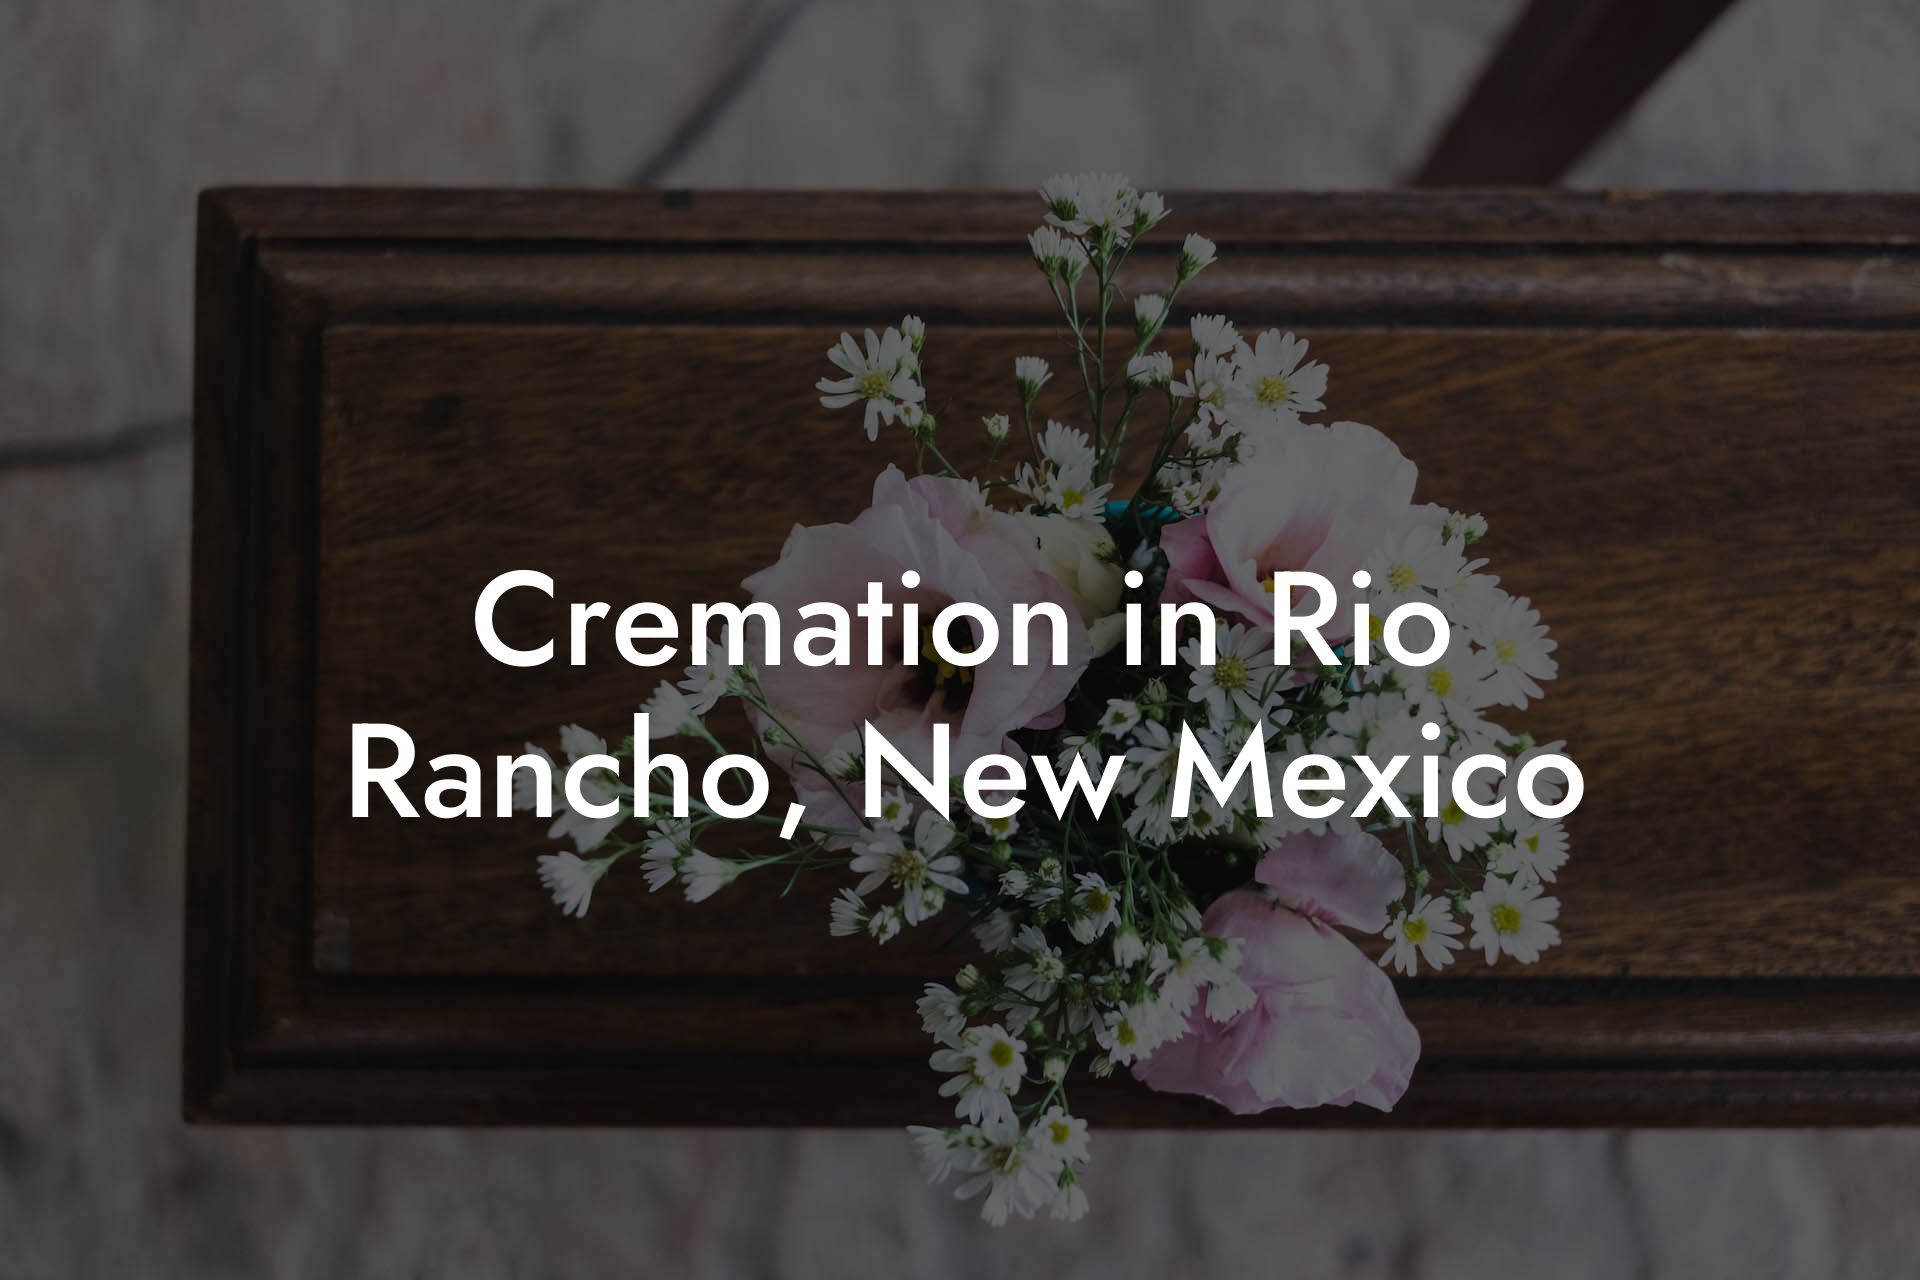 Cremation in Rio Rancho, New Mexico